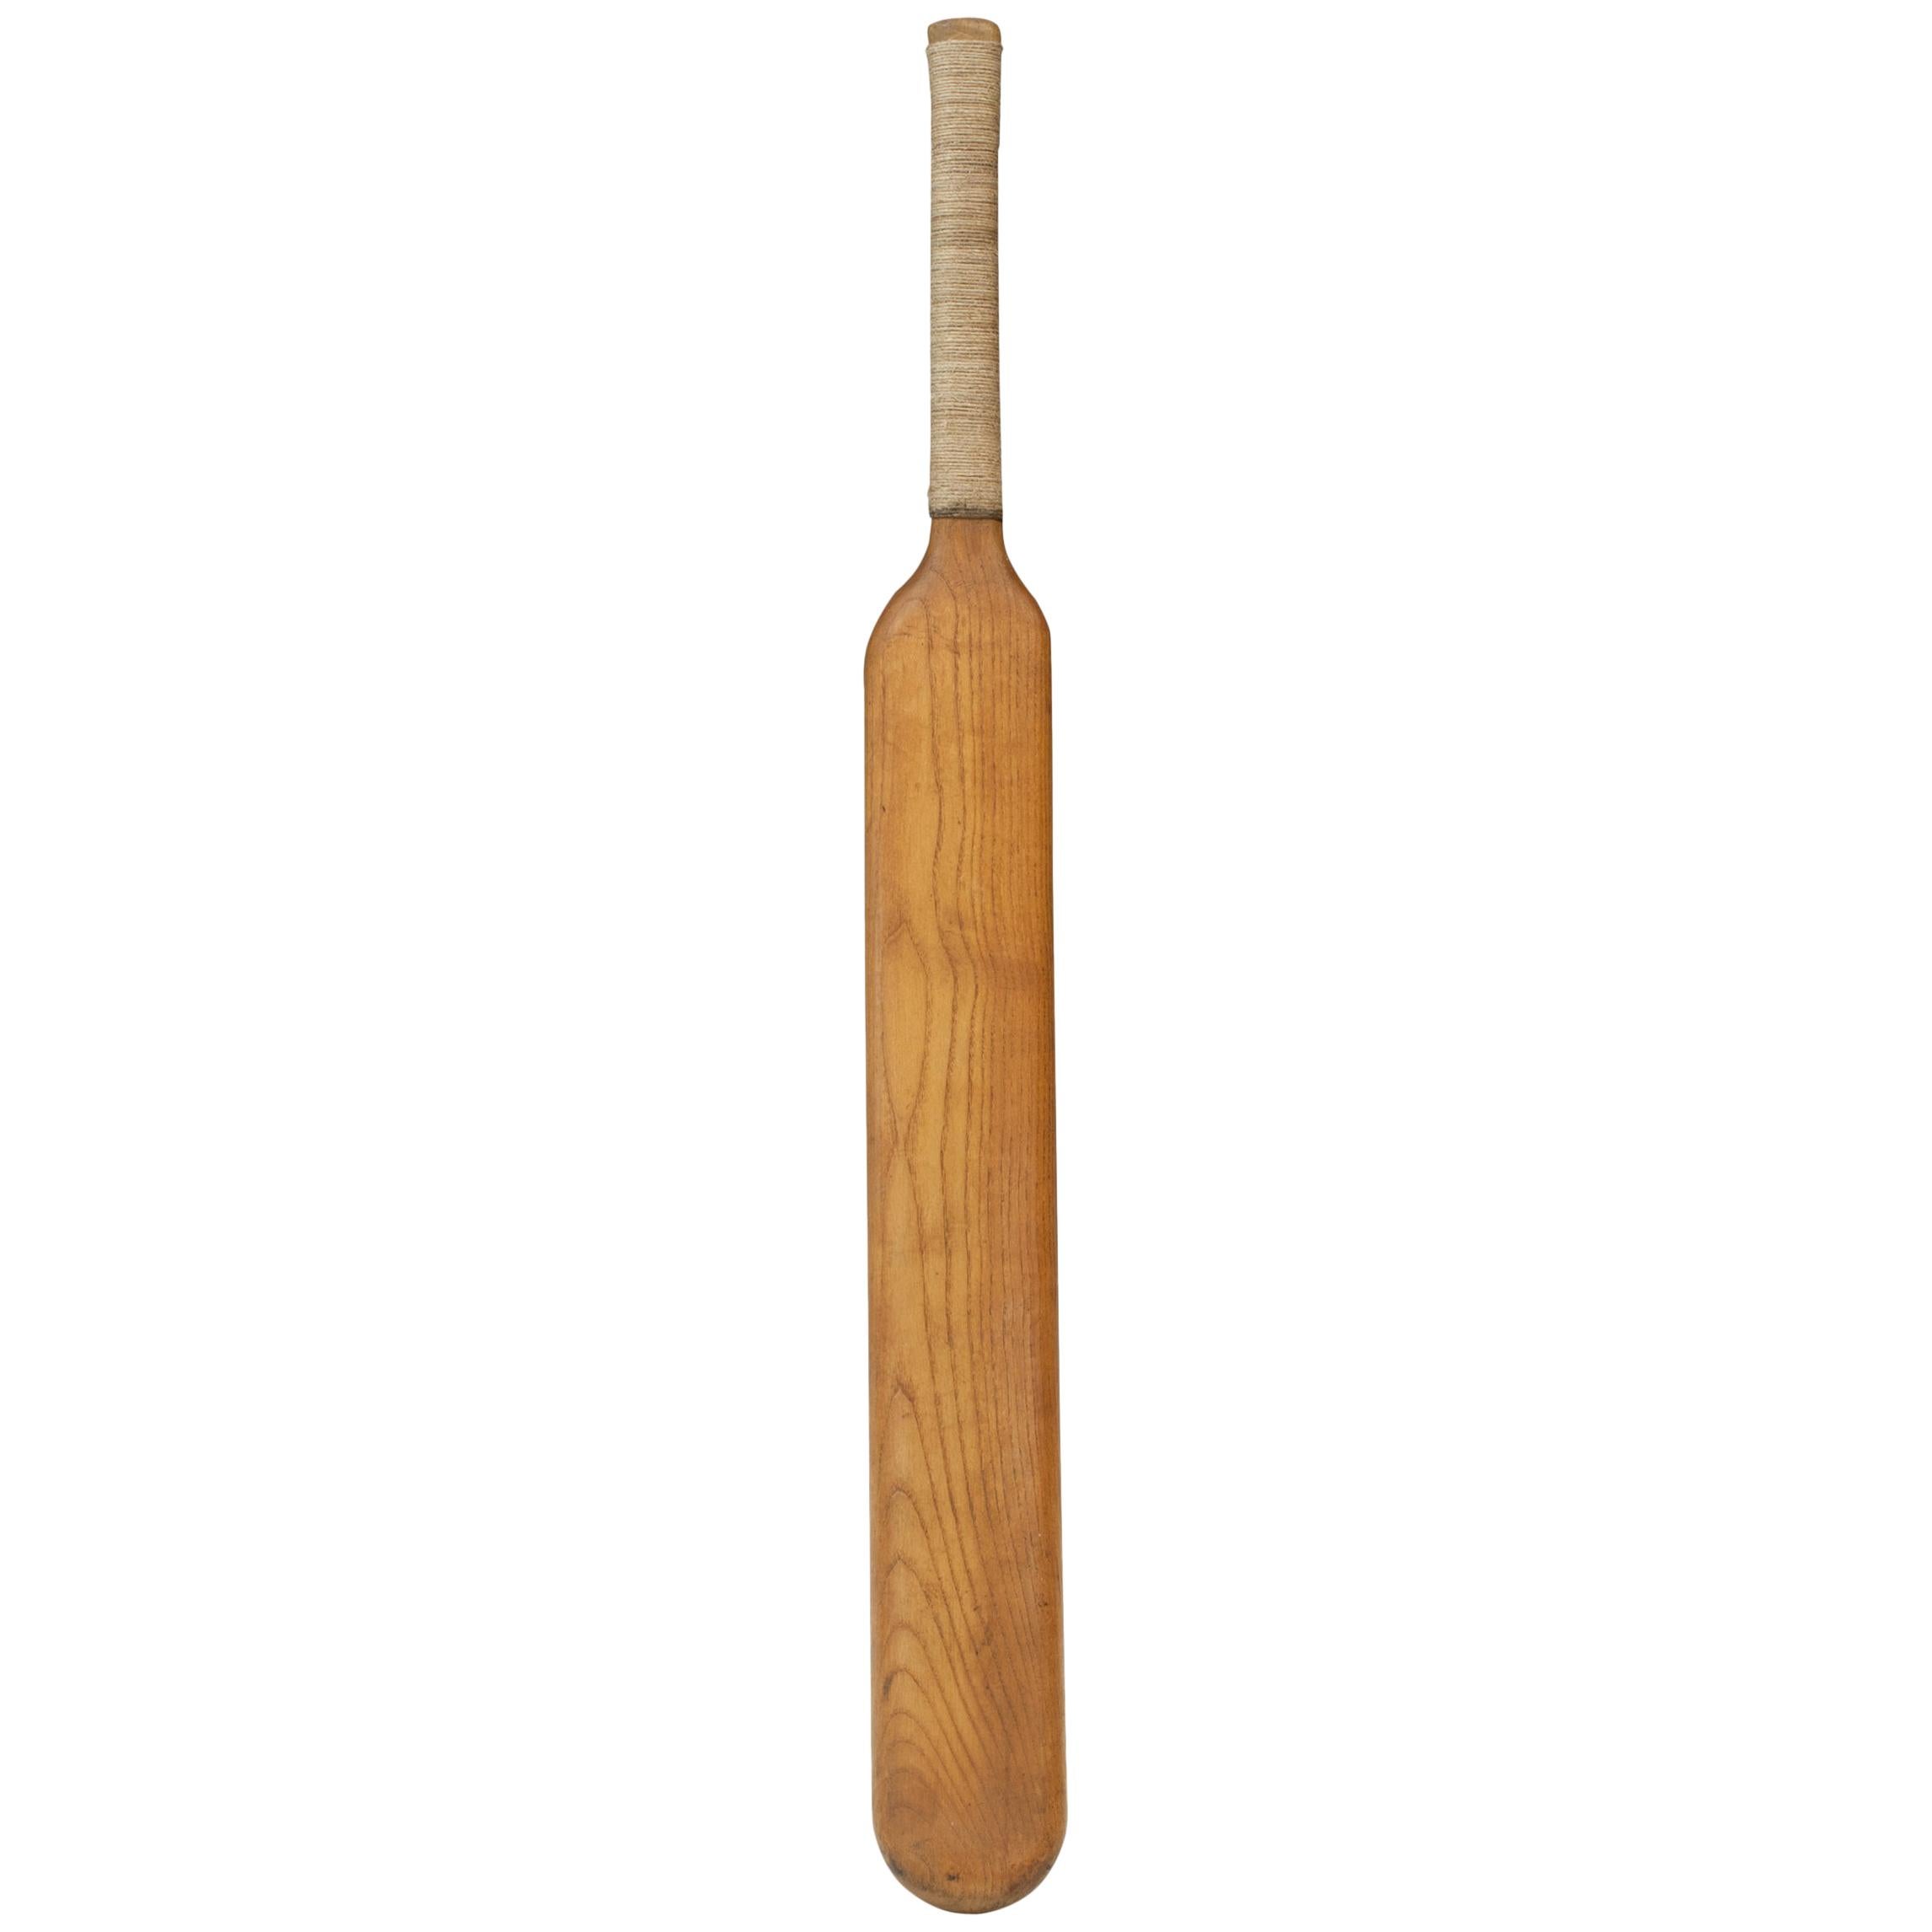 Batte de cricket de style 1770, forme inhabituelle